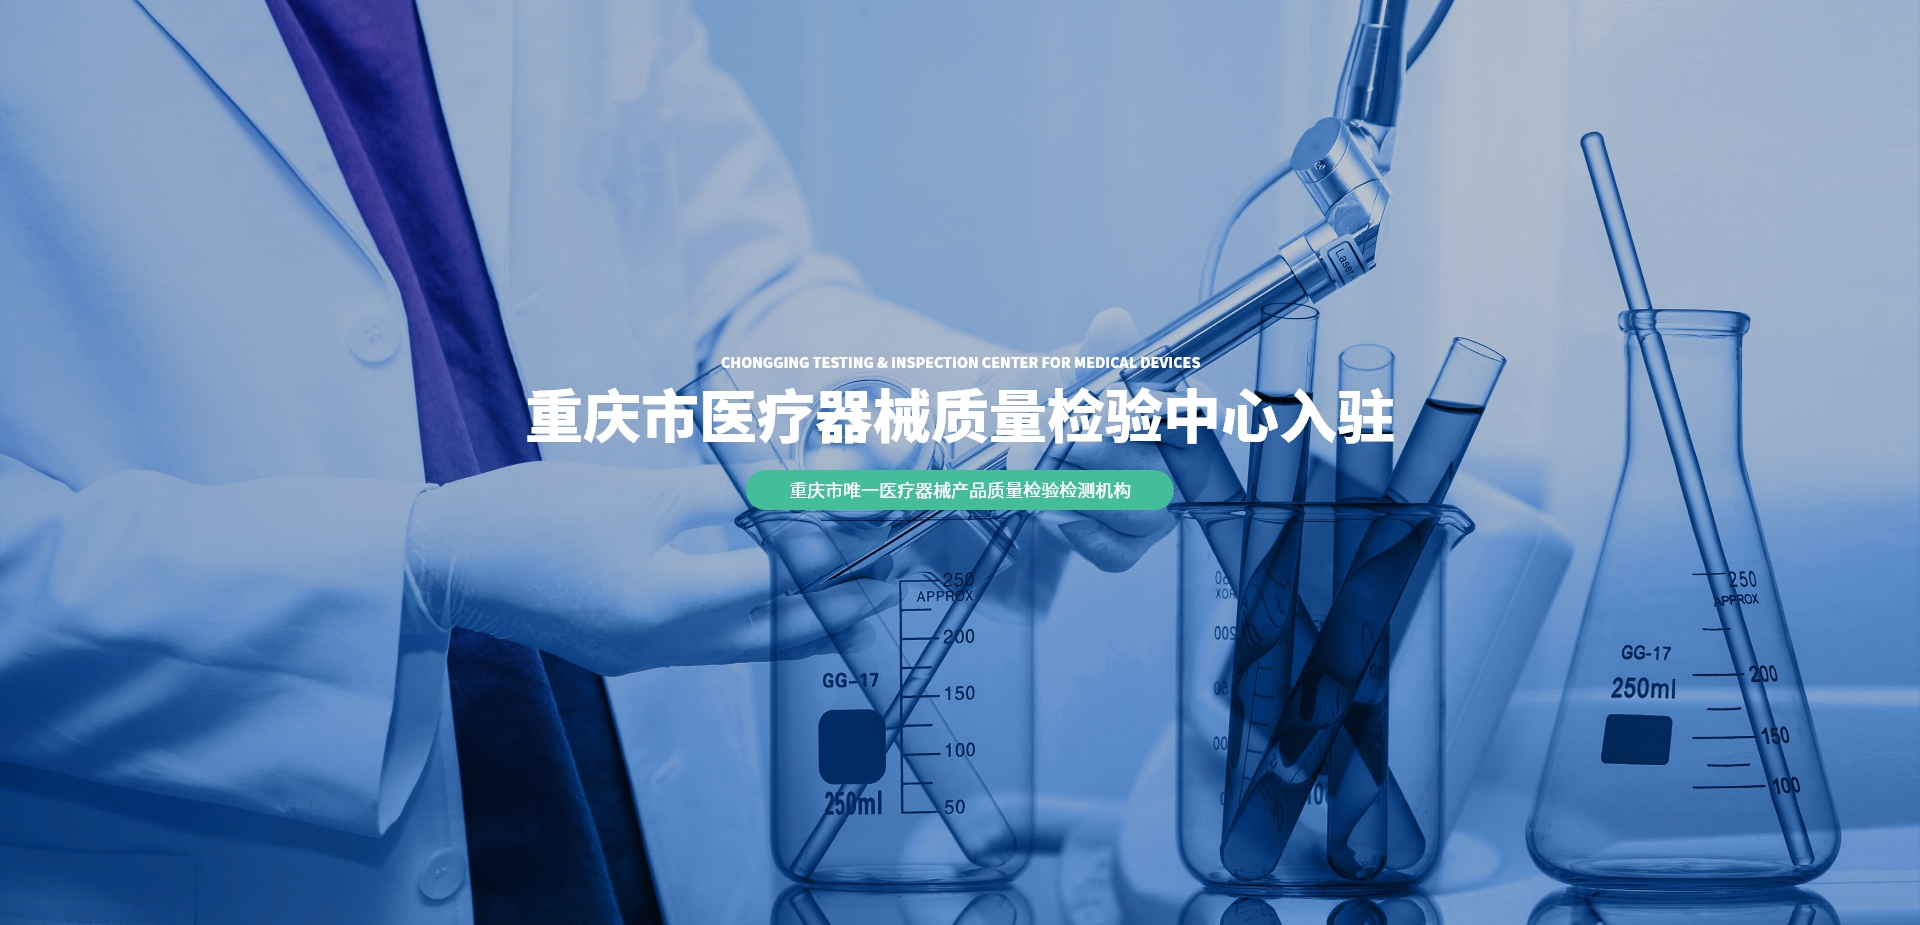 重庆市医疗器械质量检验中心入驻